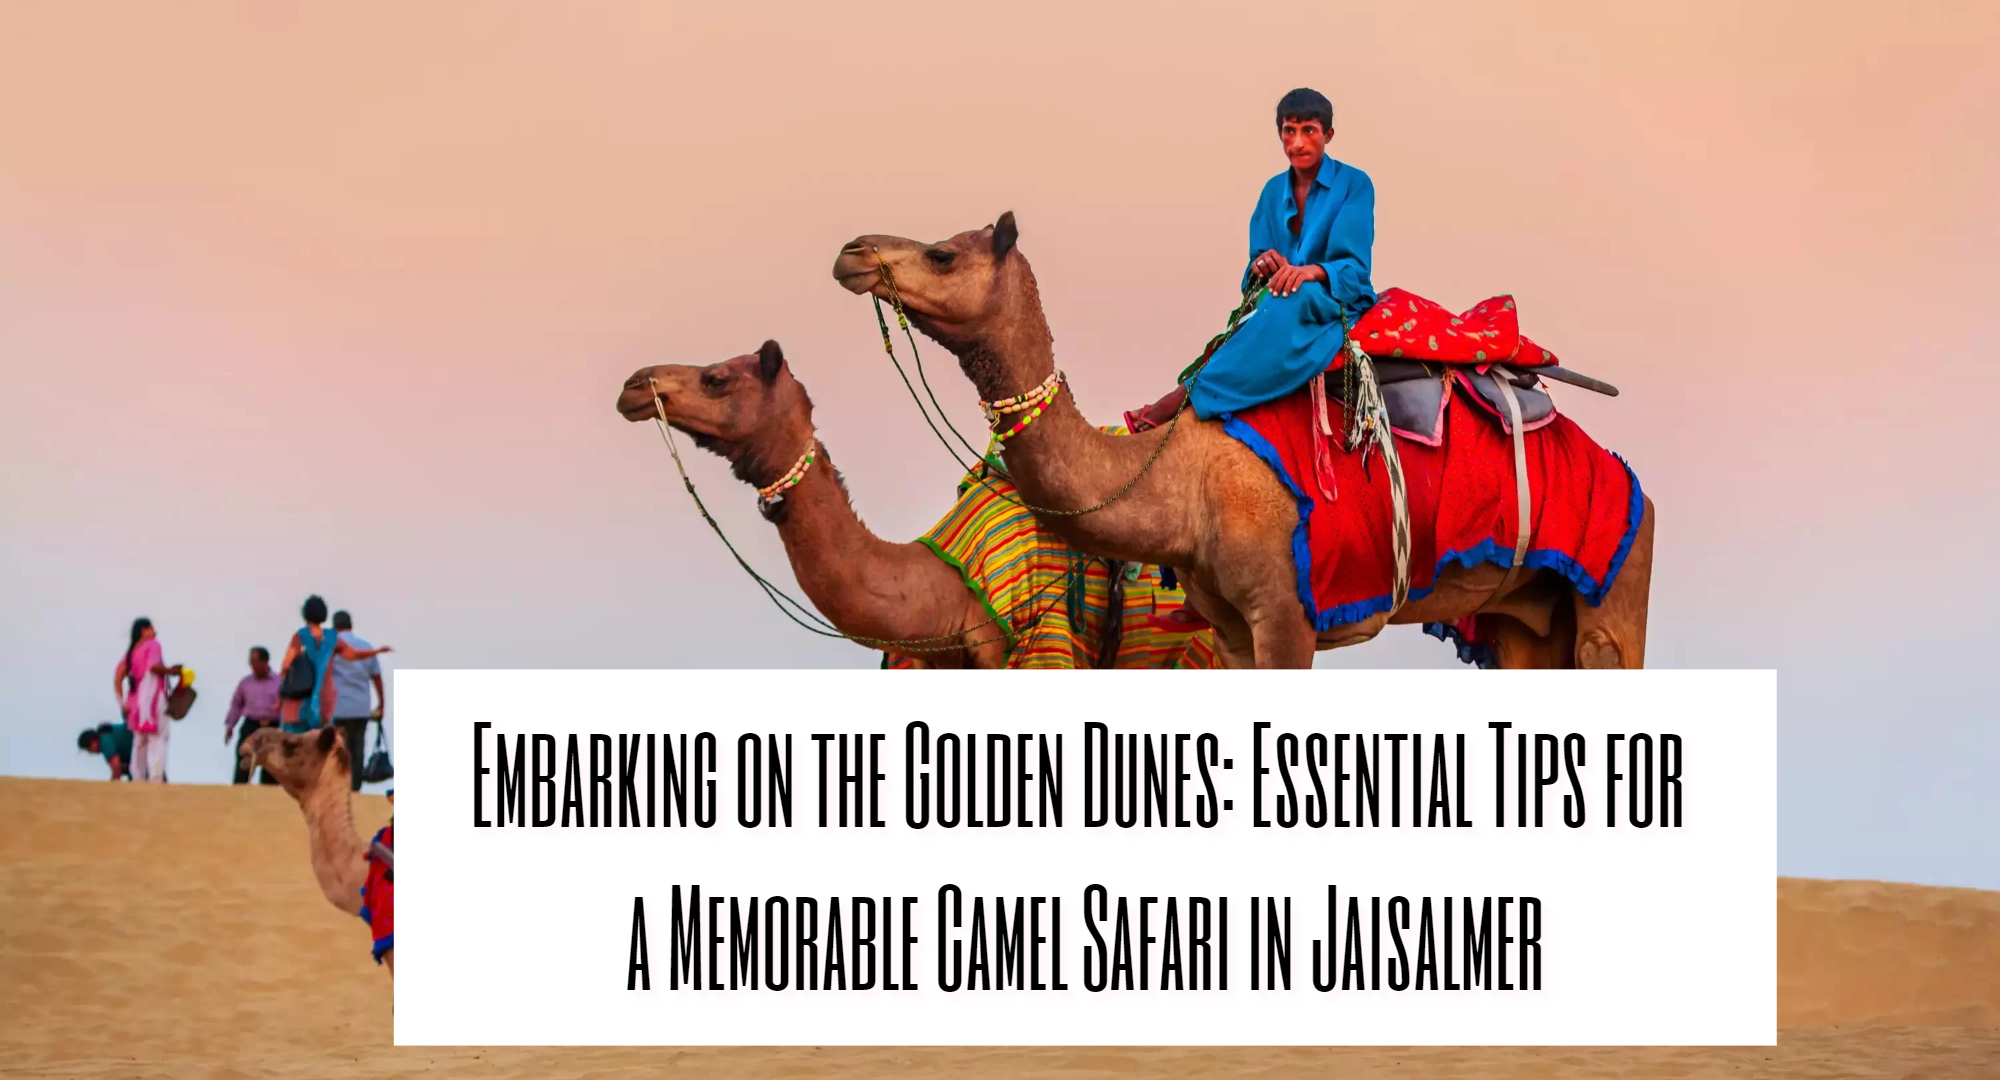 camel safari in jaisalmer, jaisalmer sightseeing, jaisalmer cabs,